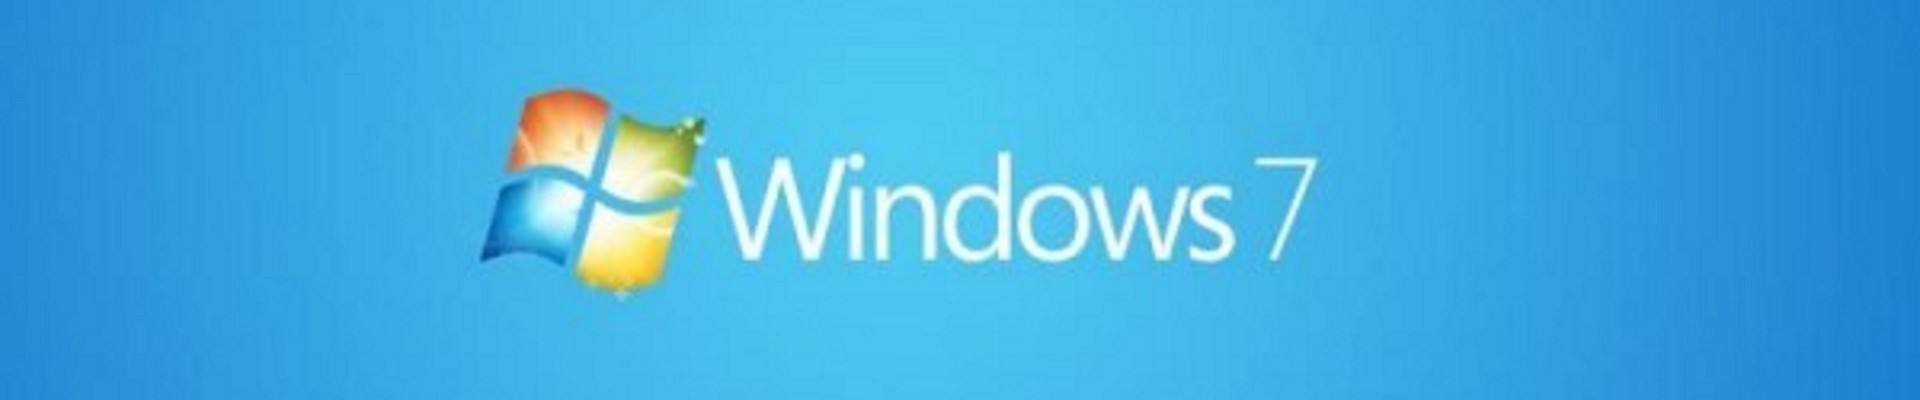 14/01/2020 - Termine del supporto per Windows 7